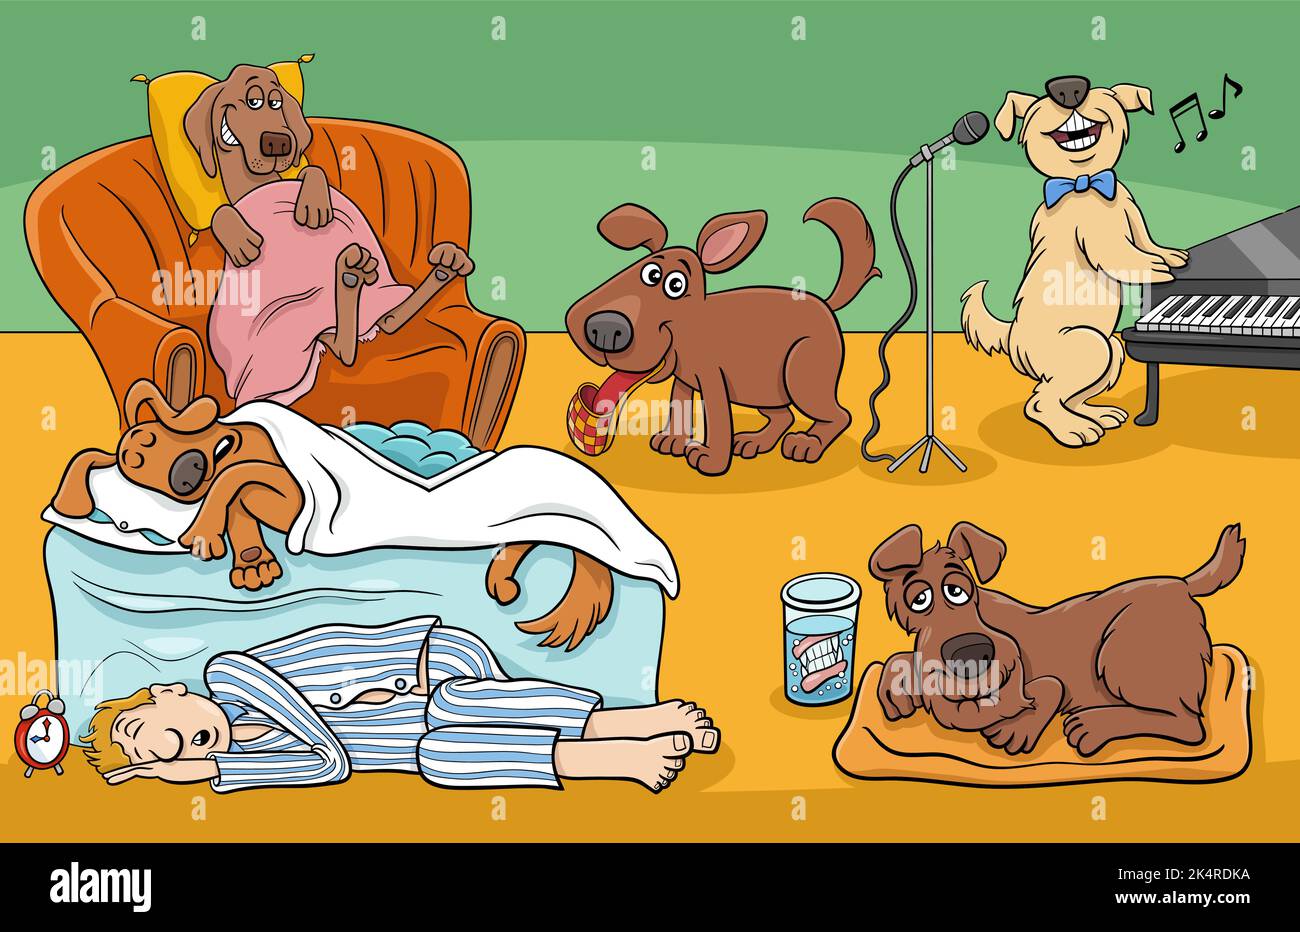 Cartoon-Illustration von lustigen Hunden und Besitzer Comic-Figuren Gruppe Stock Vektor